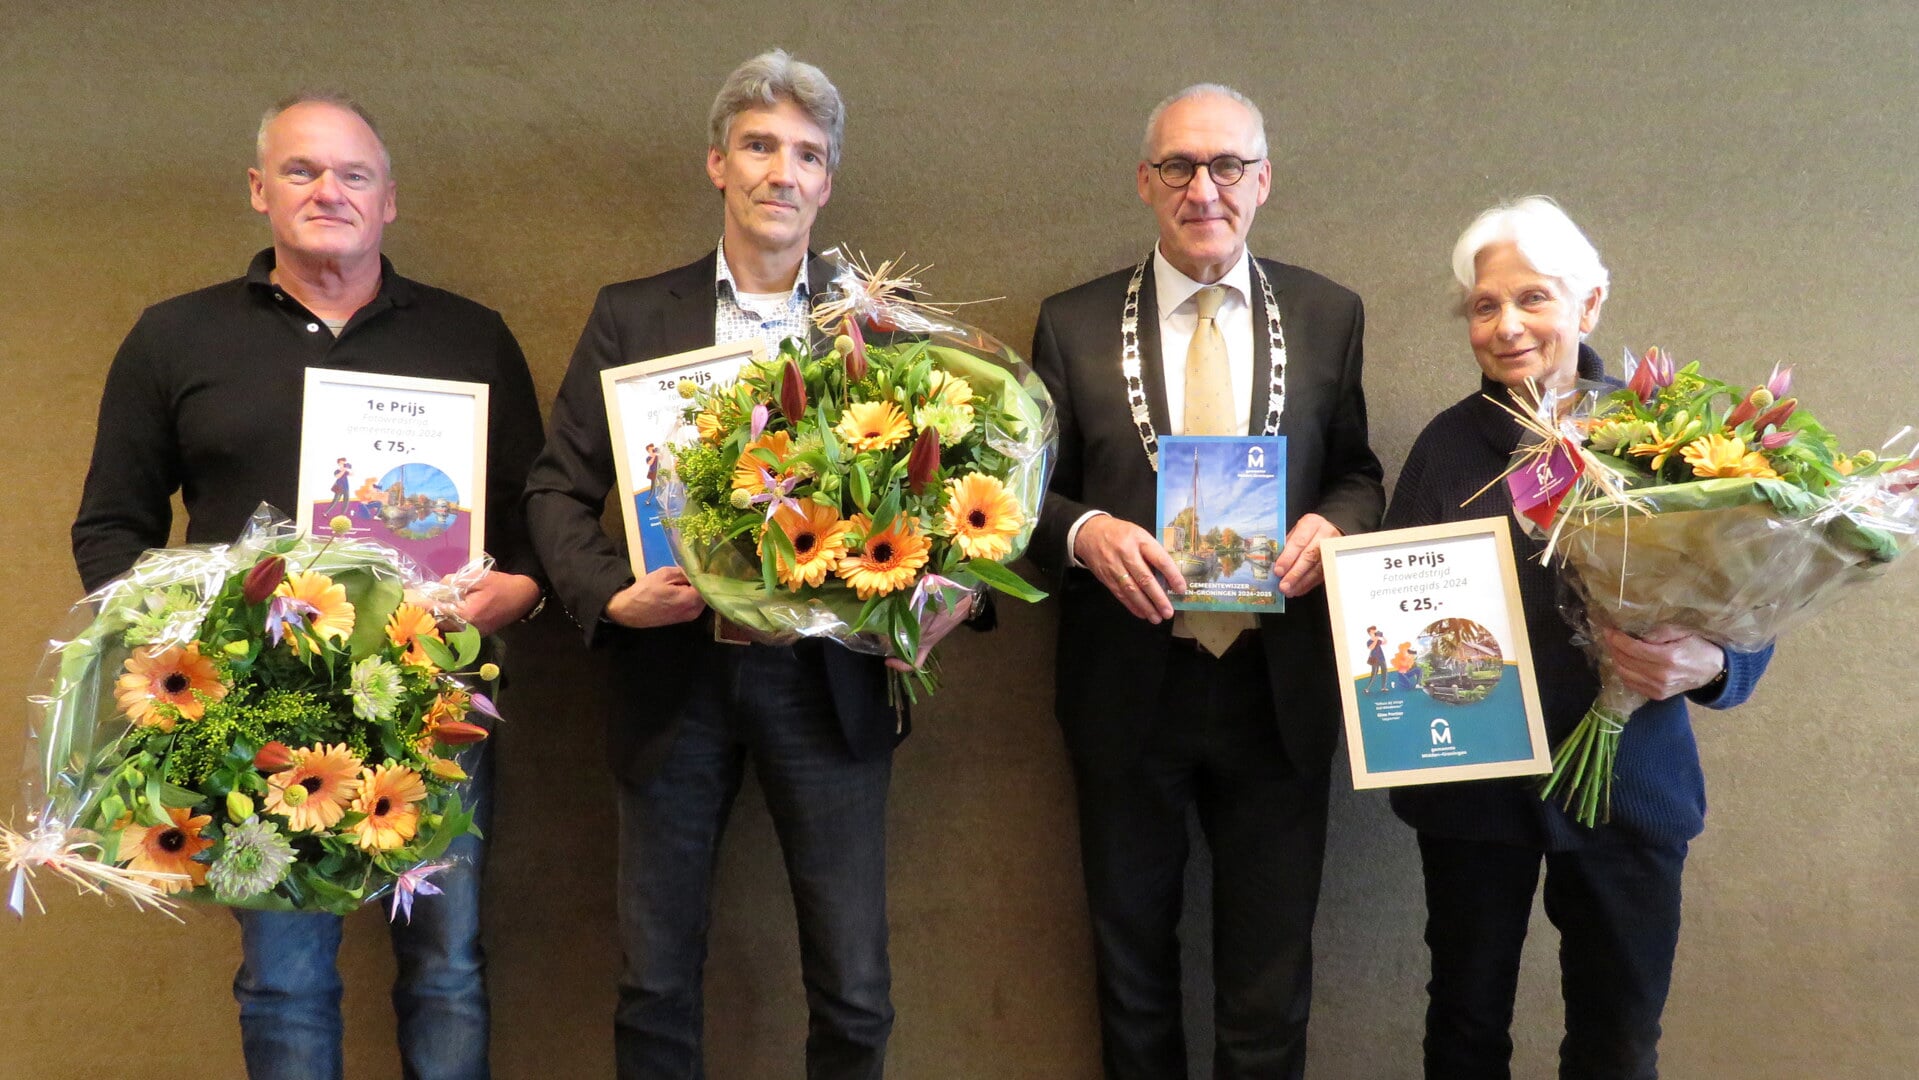 De prijswinnaars met vanaf links John du Pree, Geert Jan Veldthuis, burgemeester Hoogendoorn en Elise Portier. 